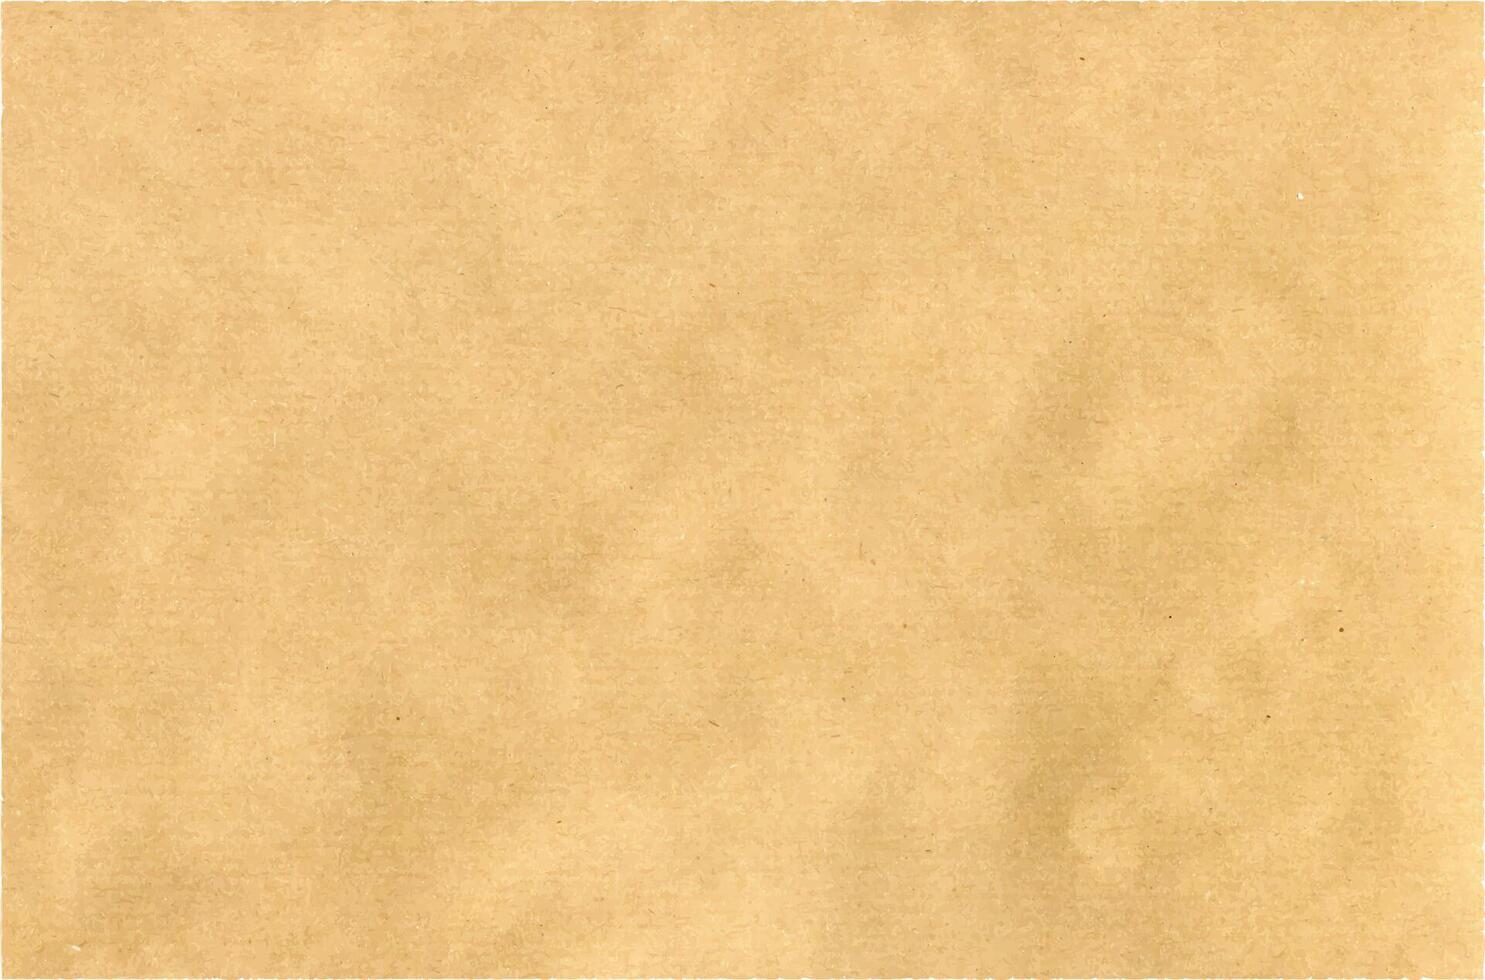 gerecycled kraft papier achtergrond. verfrommeld beige papier voor Sjablonen. vector illustratie.